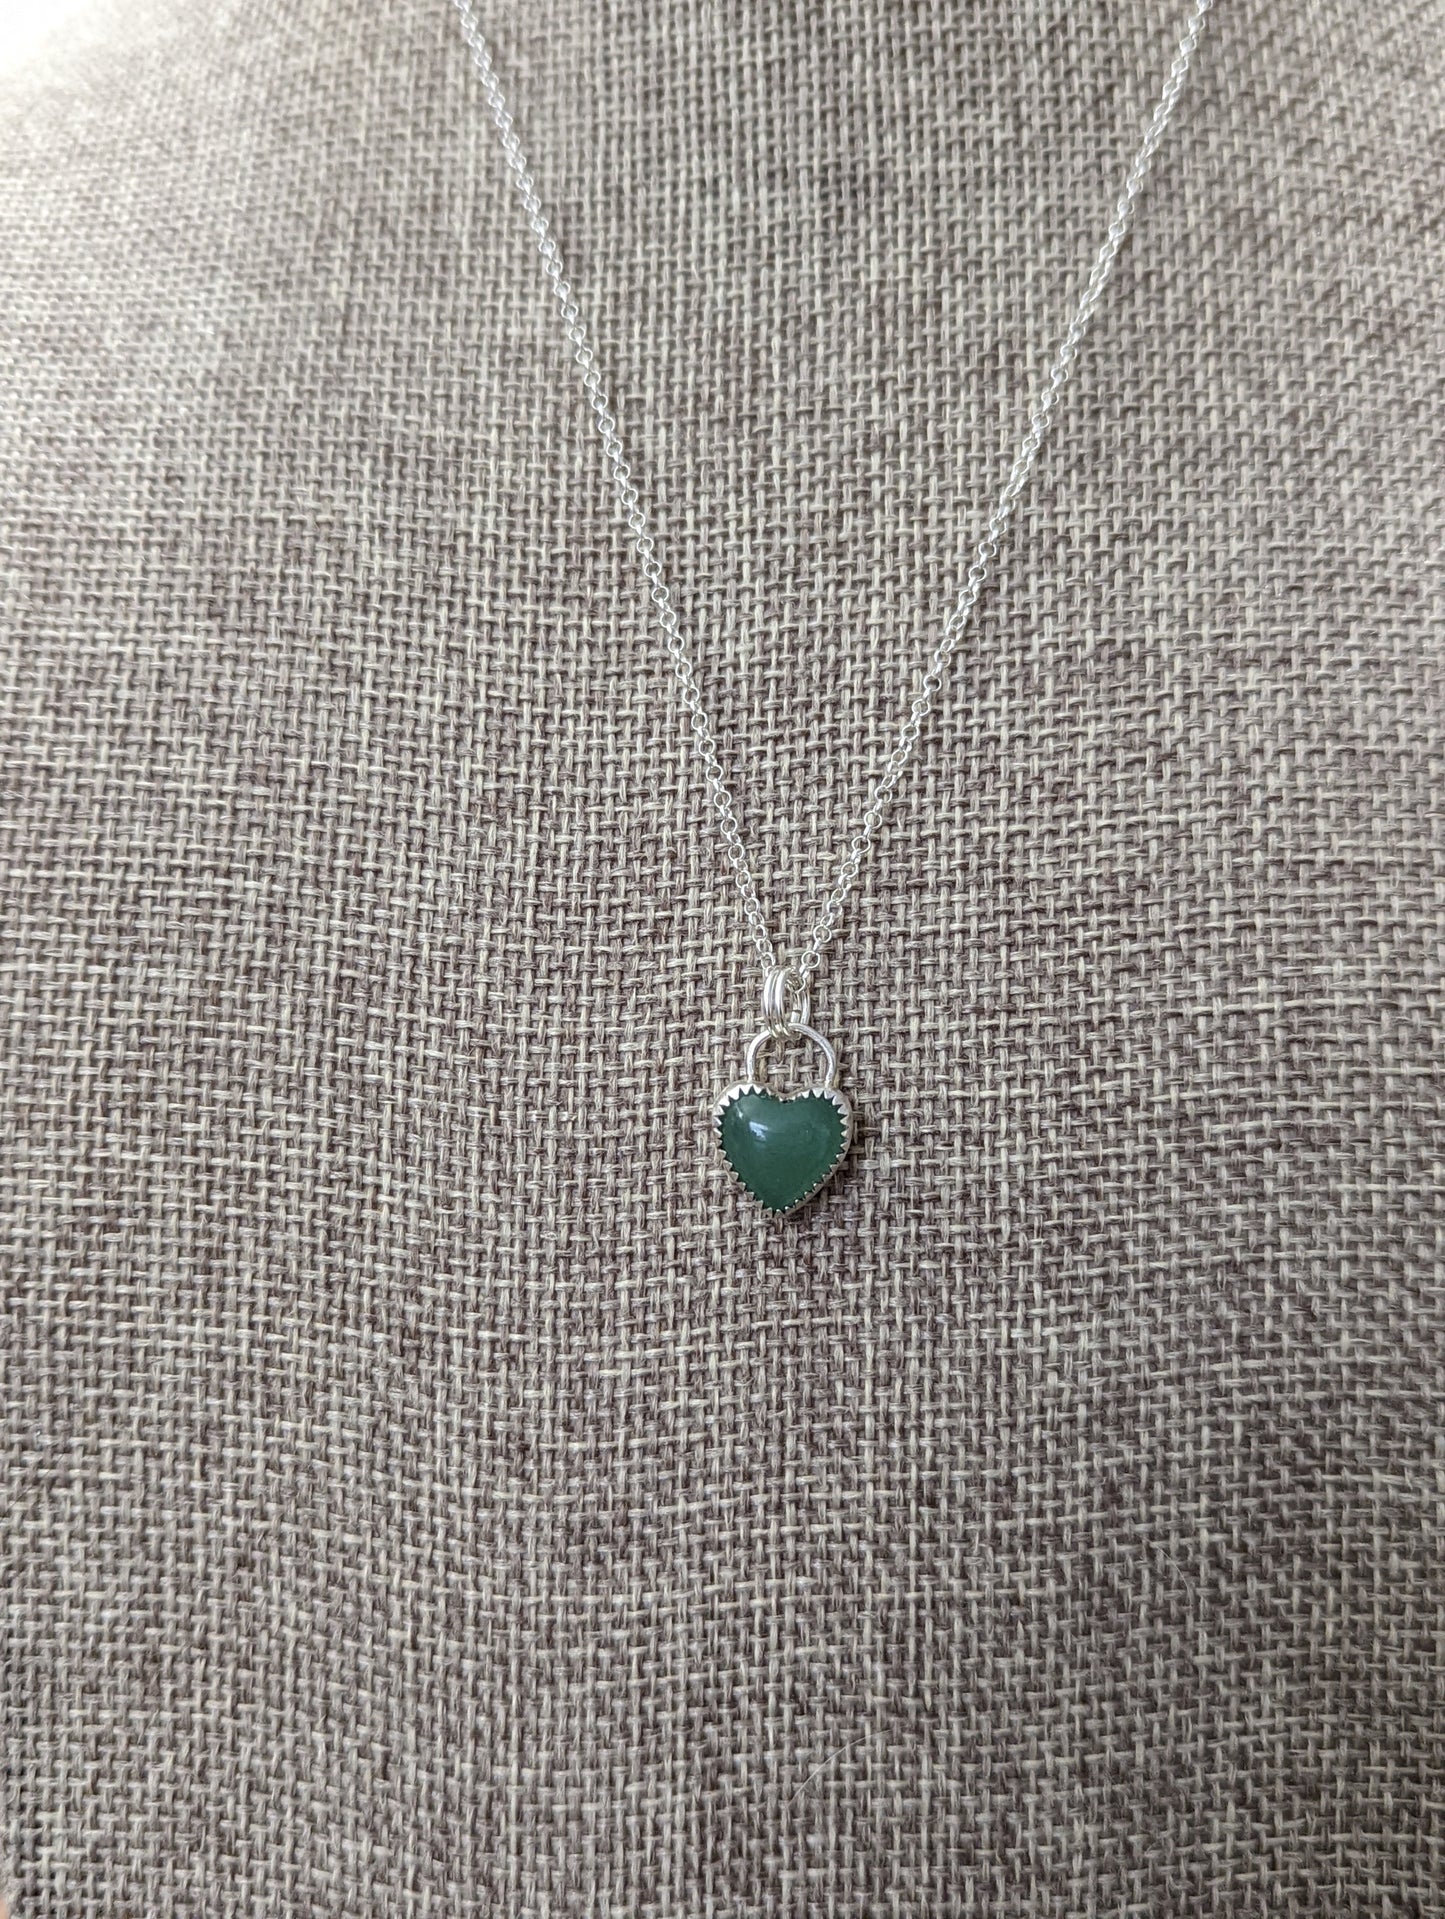 Green Aventurine Mini Heart Necklace (MTO)